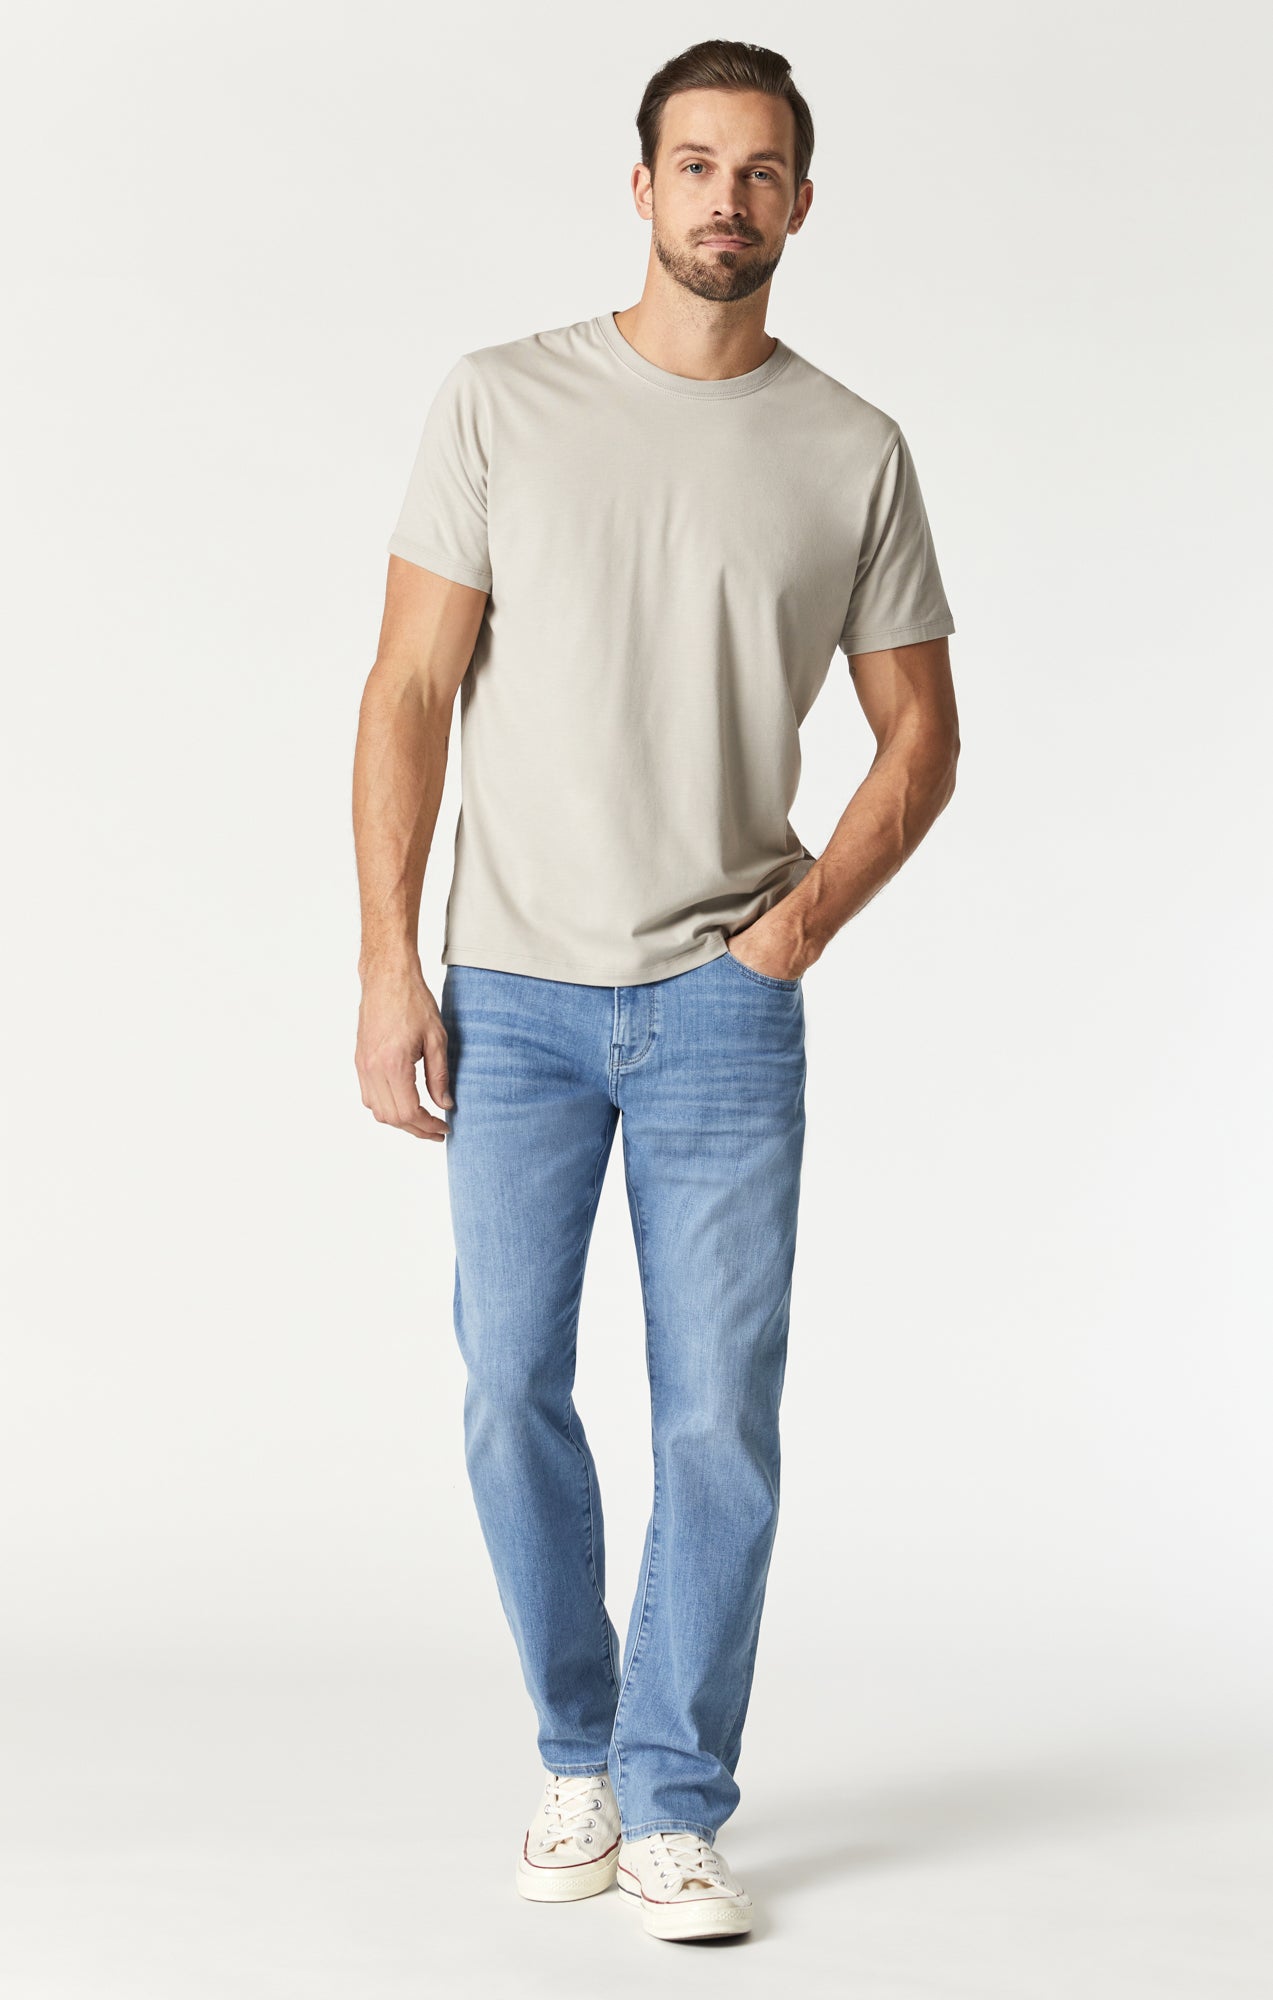 Naturalist Men's Short Sleeve Button Up Shirt, Gray / L